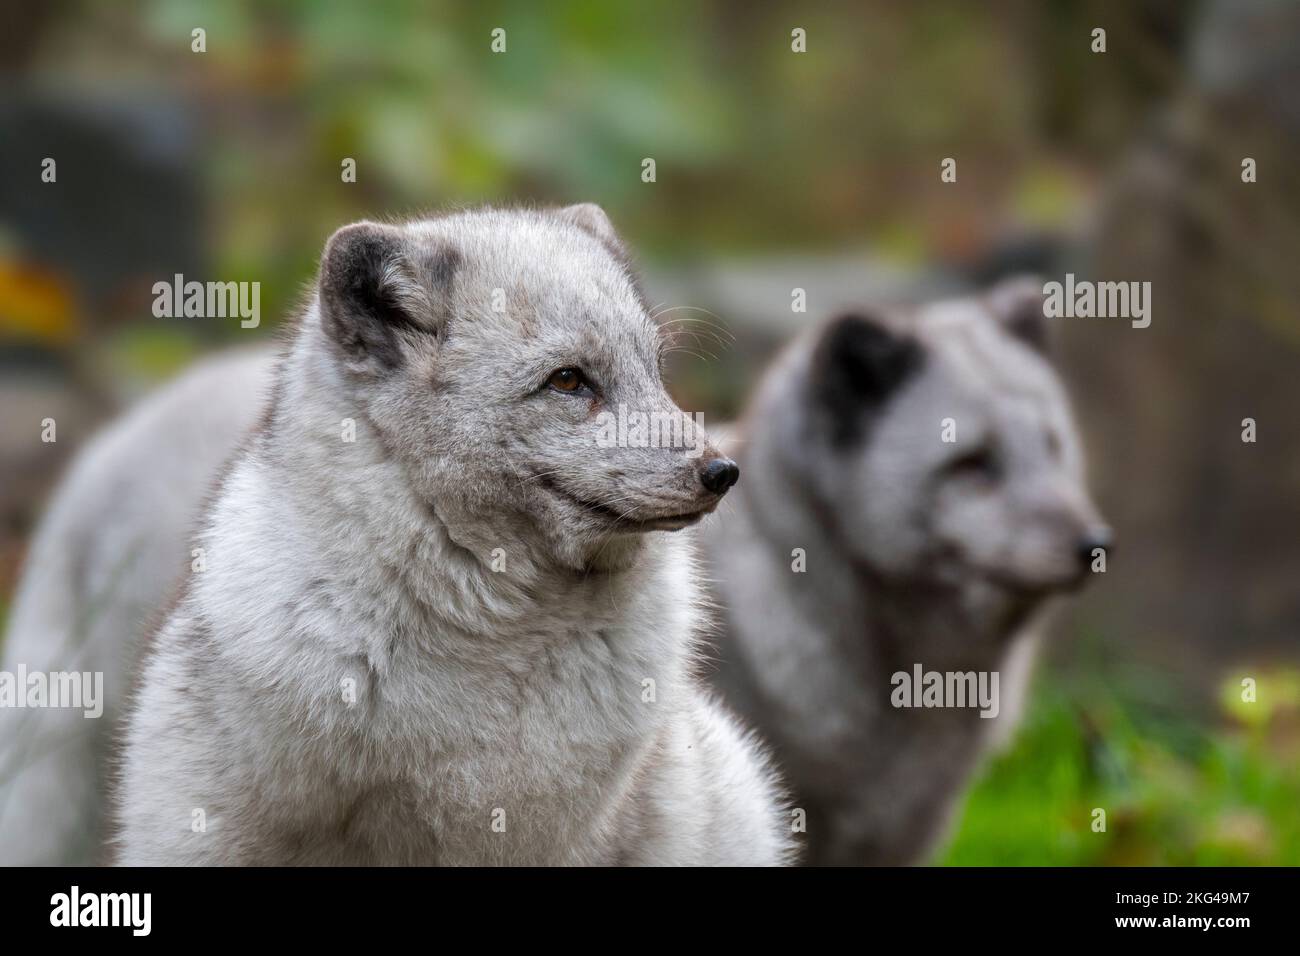 Dos zorros árticos / zorro blanco / zorro polar / zorro de nieve (Vulpes lagopus / Alopex lagopus) mostrando su gruesa capa de invierno en otoño / otoño Foto de stock